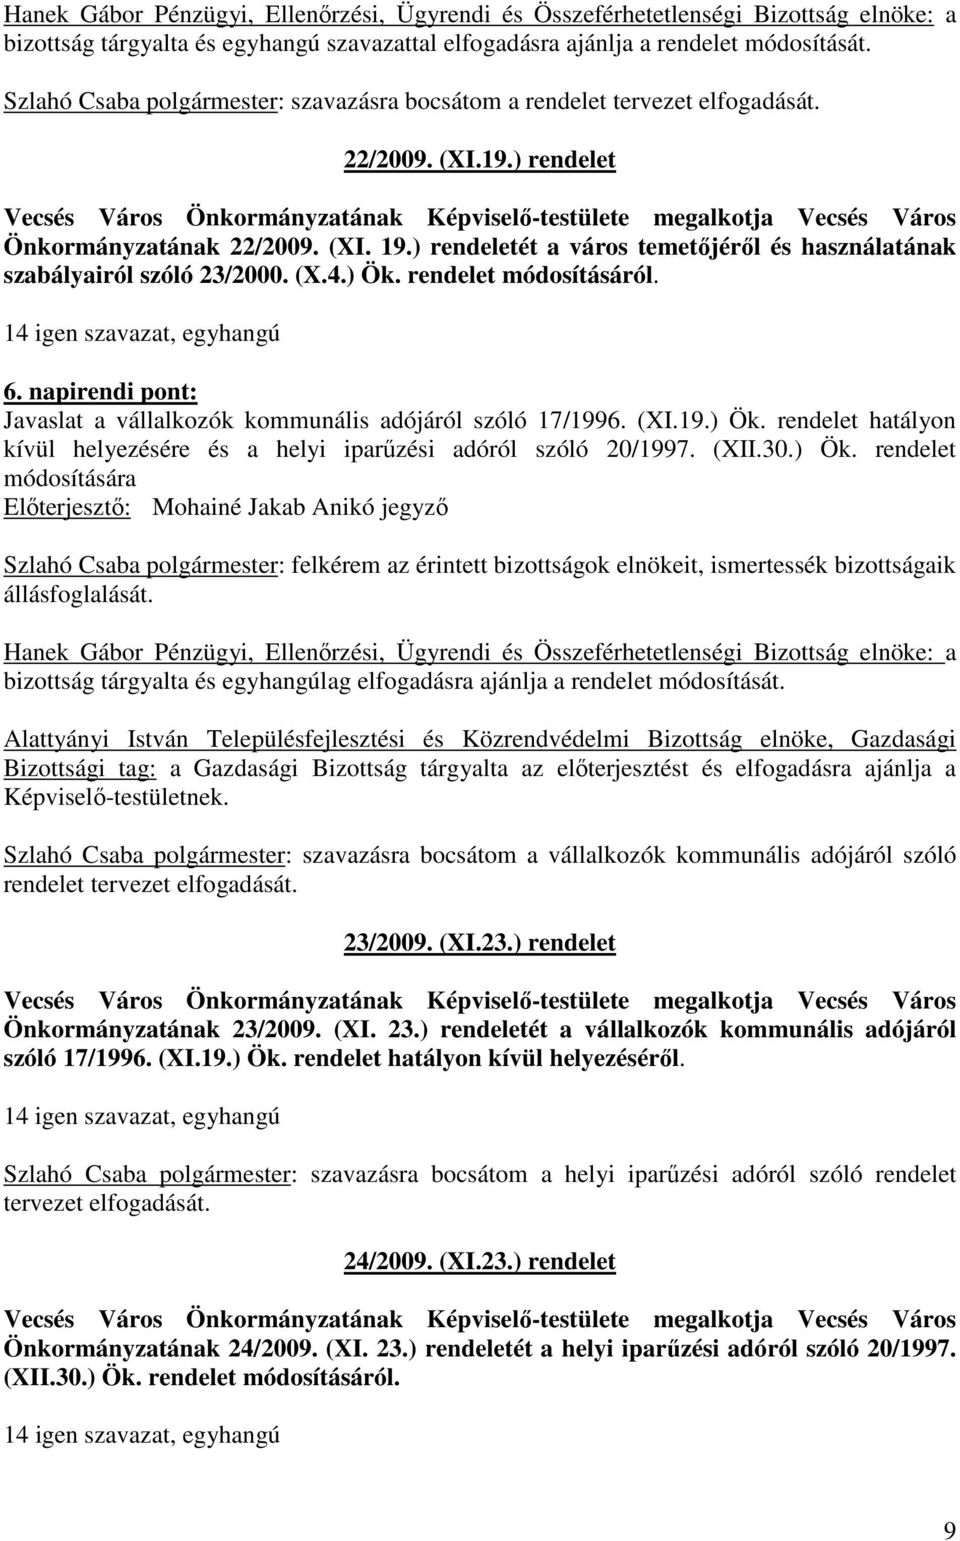 ) rendelet Vecsés Város Önkormányzatának Képviselı-testülete megalkotja Vecsés Város Önkormányzatának 22/2009. (XI. 19.) rendeletét a város temetıjérıl és használatának szabályairól szóló 23/2000. (X.4.